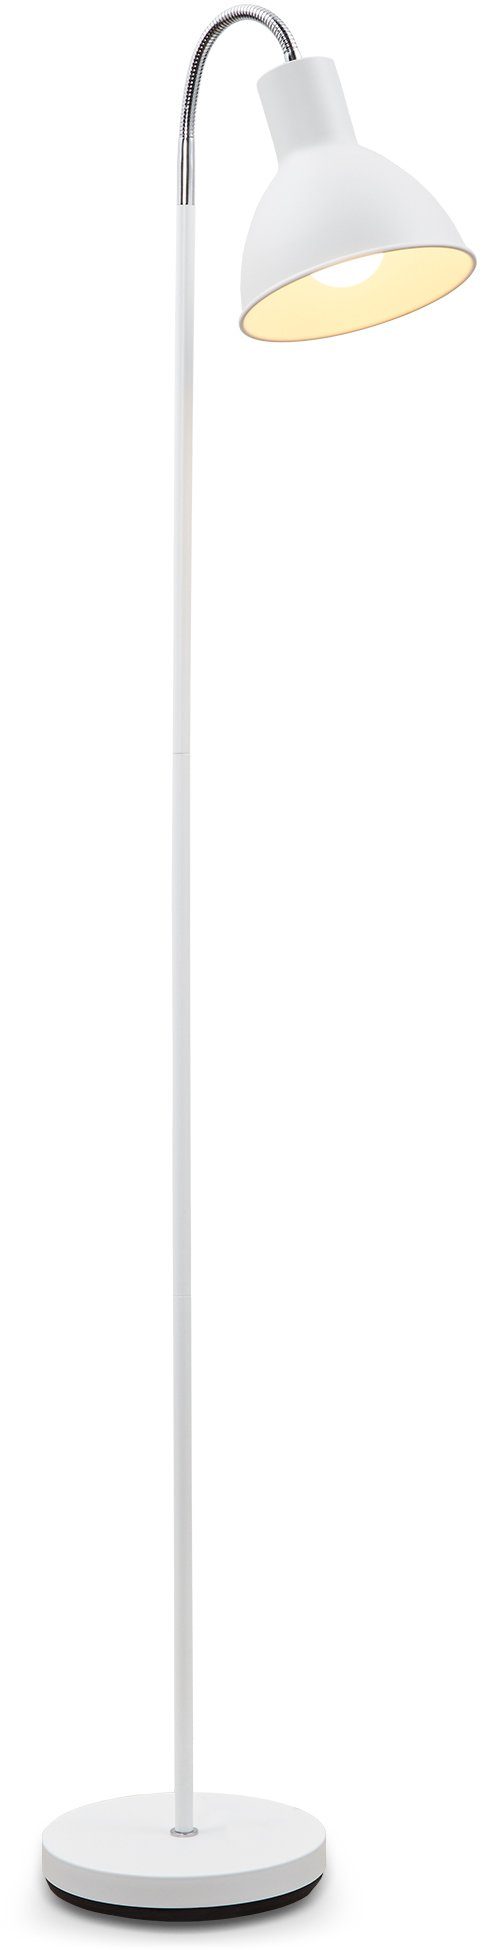 B.K.Licht LED Stehlampe, ohne Leuchtmittel, weiß Design Stand-Leuchte schwenkbar Stehleuchte Industrial Metall Warmweiß, E27